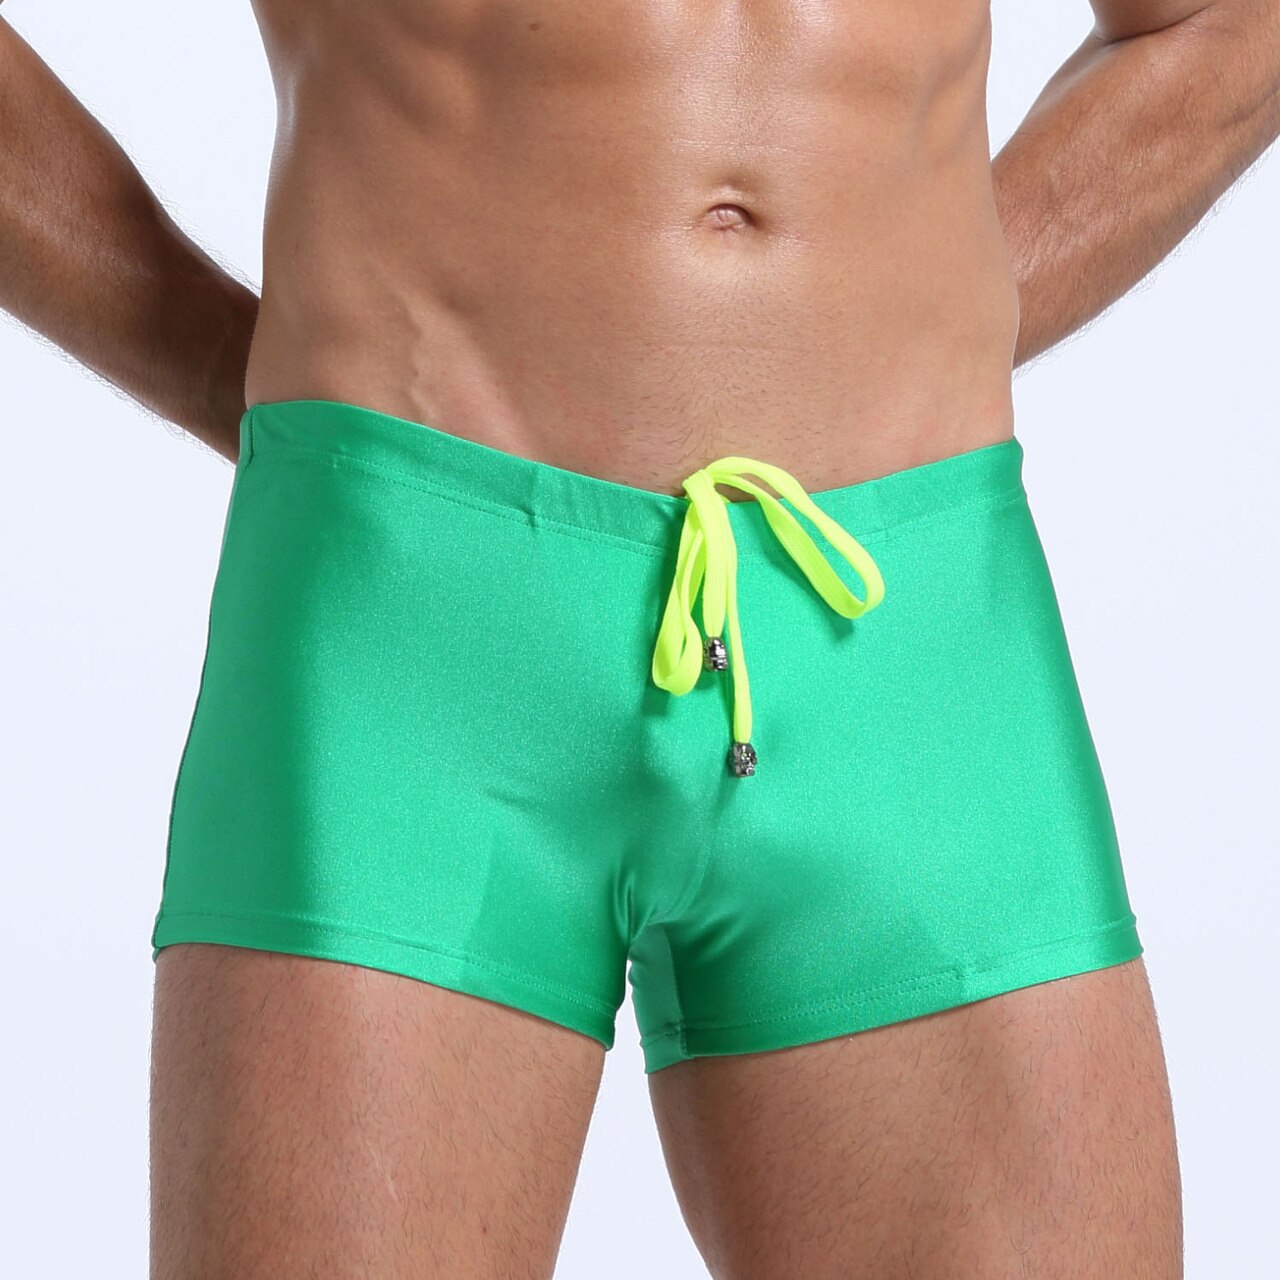 SALE - Mens Spandex Swimwear Boxer Brief Green